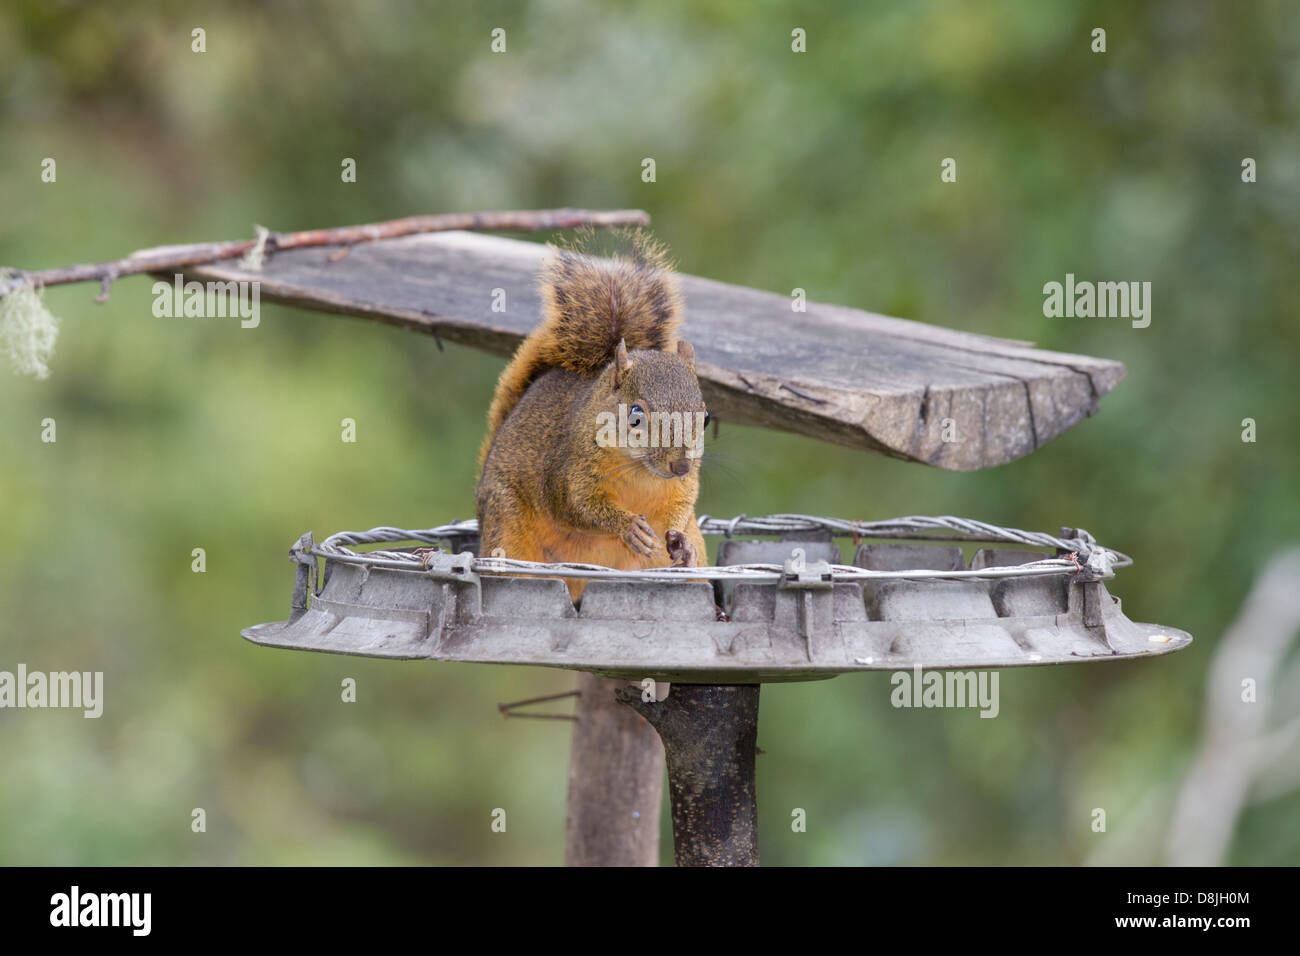 Squirrel, San Gerardo de Dota, Parque Nacional Los Quetzales, Costa Rica Stock Photo